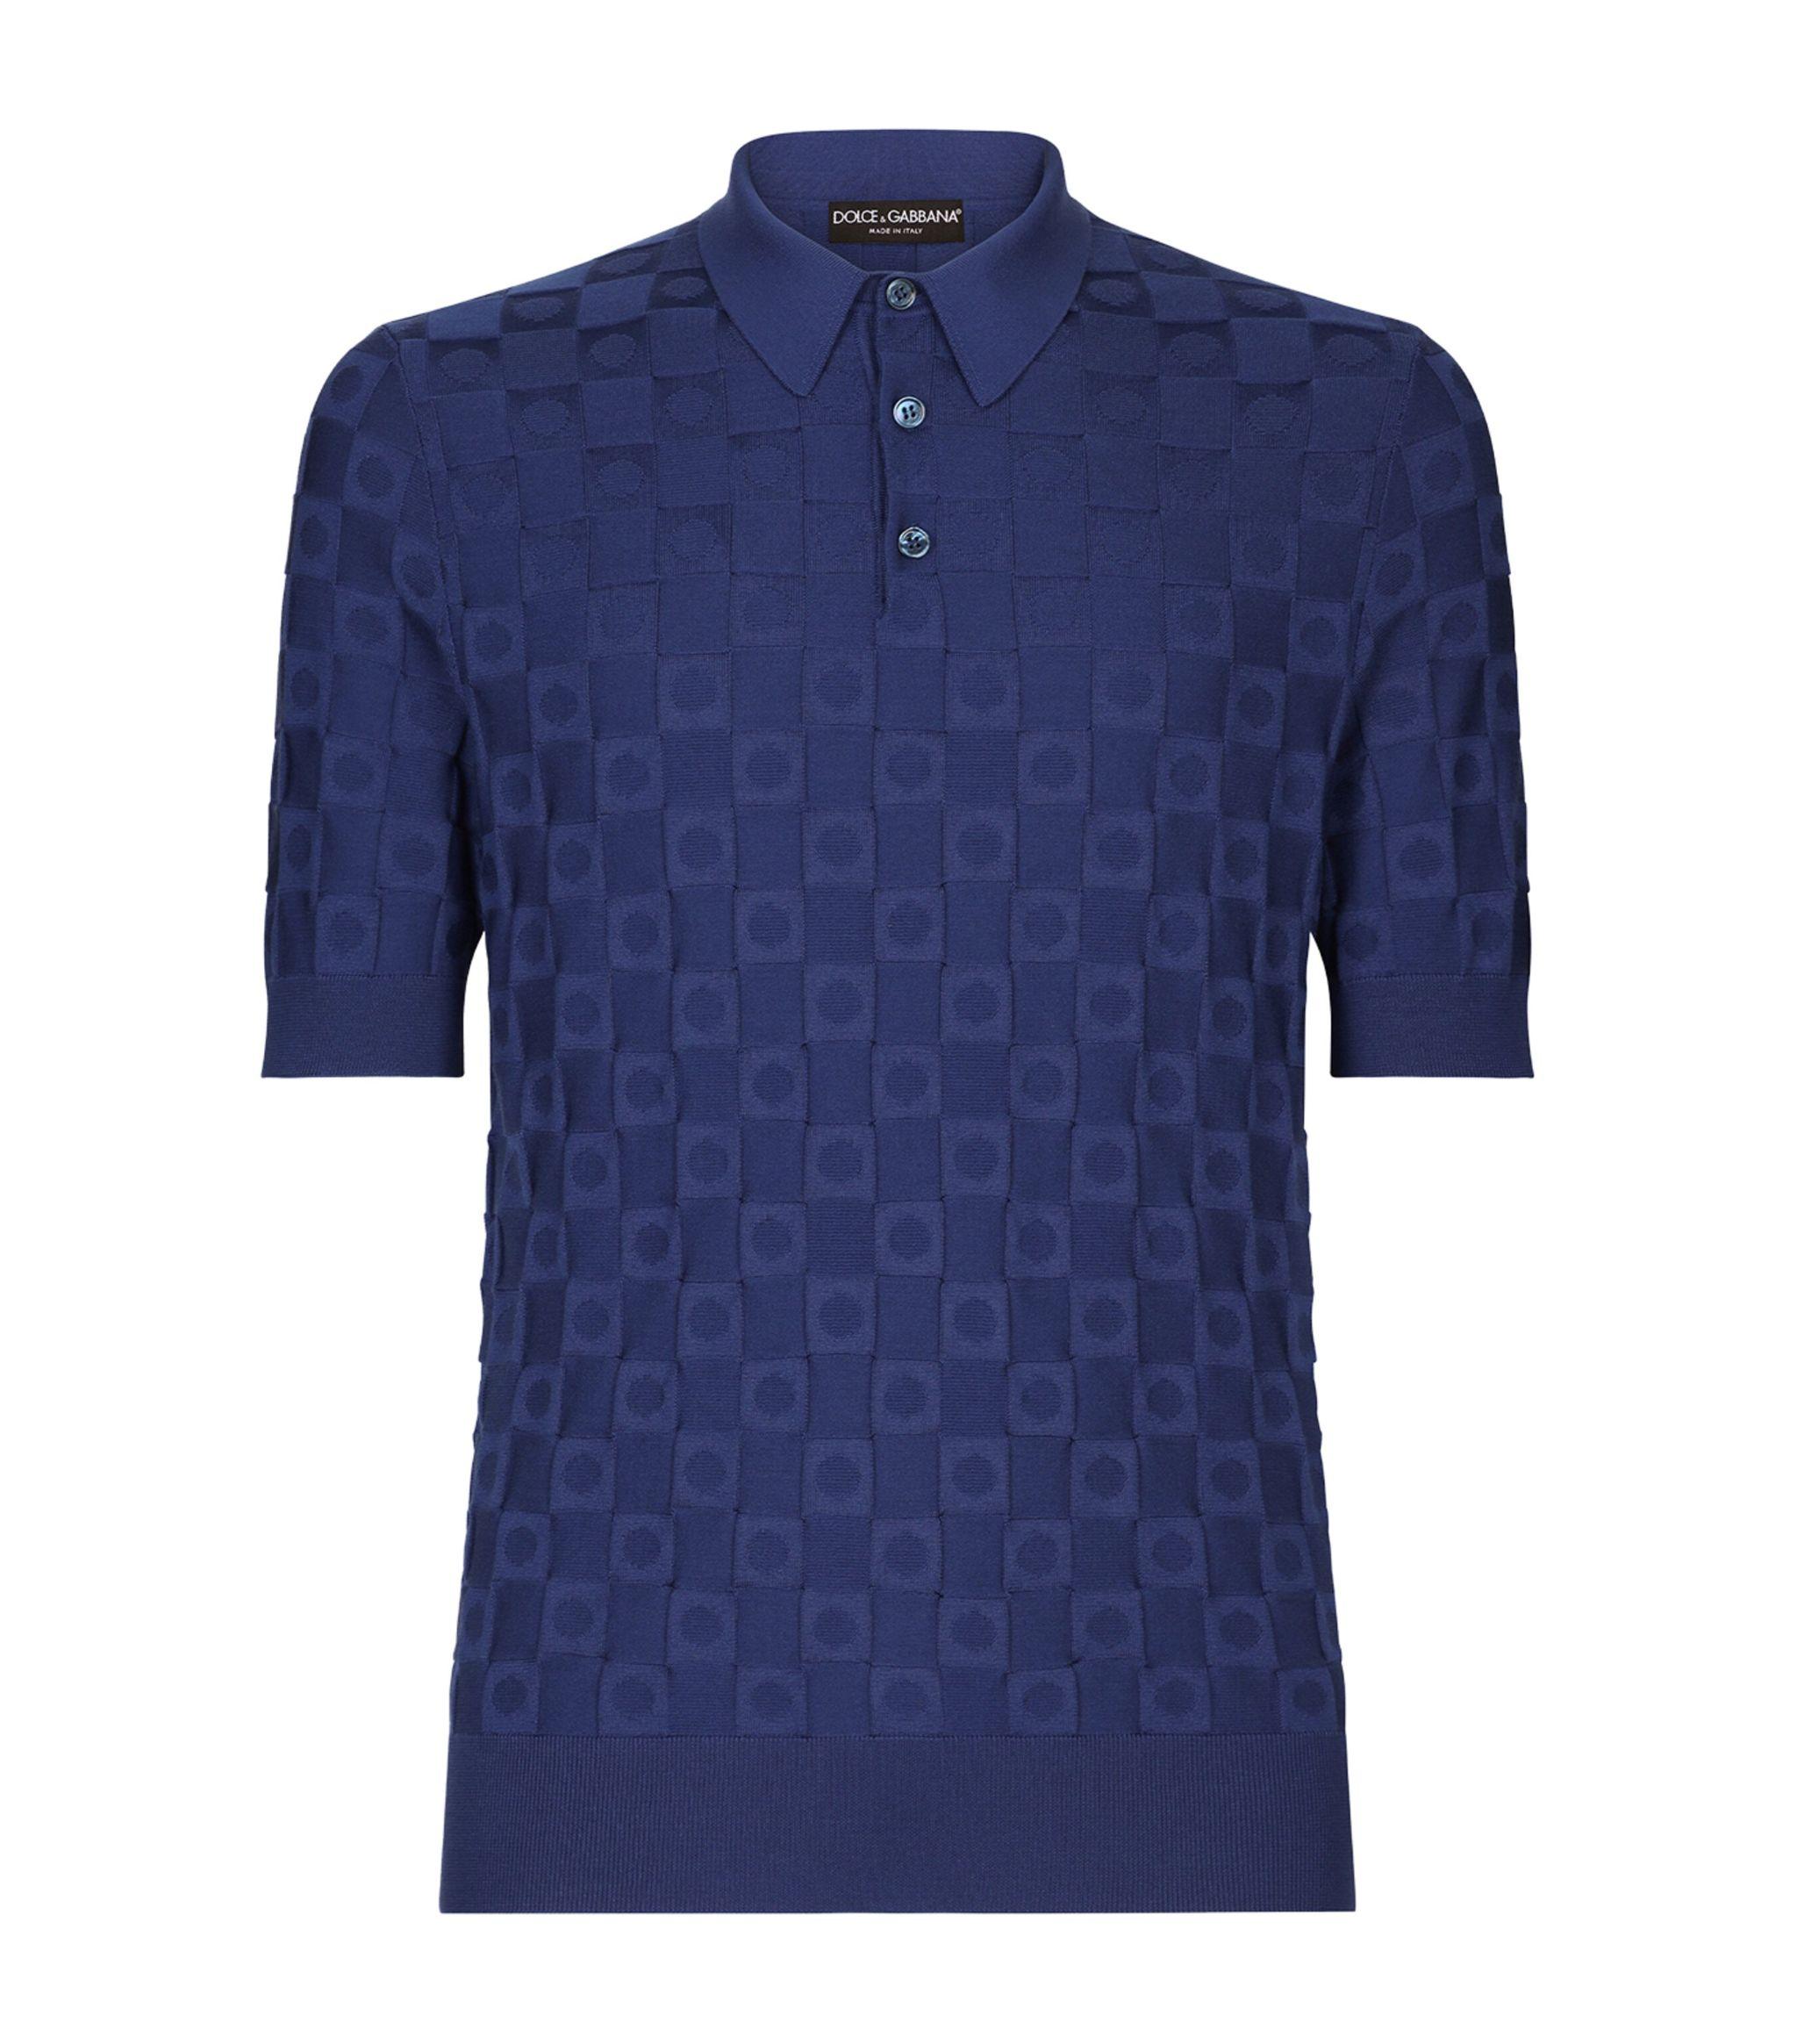 Dolce & Gabbana Silk Jacquard Polo Shirt in Blue for Men